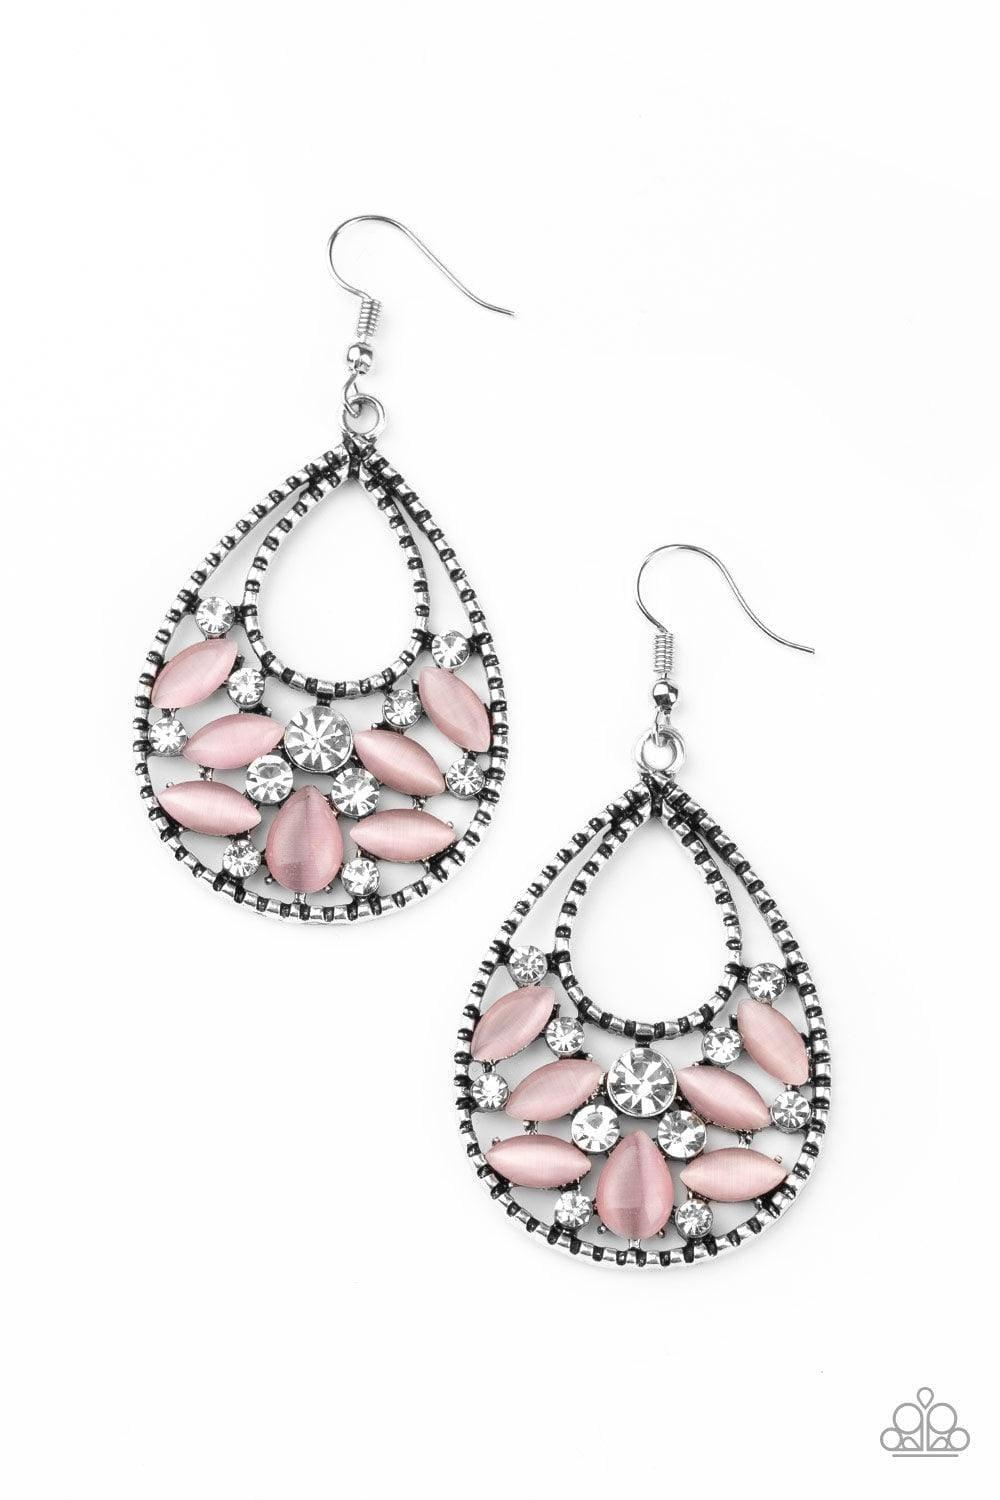 Paparazzi Accessories - Dewy Dazzle - Pink Earrings - Bling by JessieK